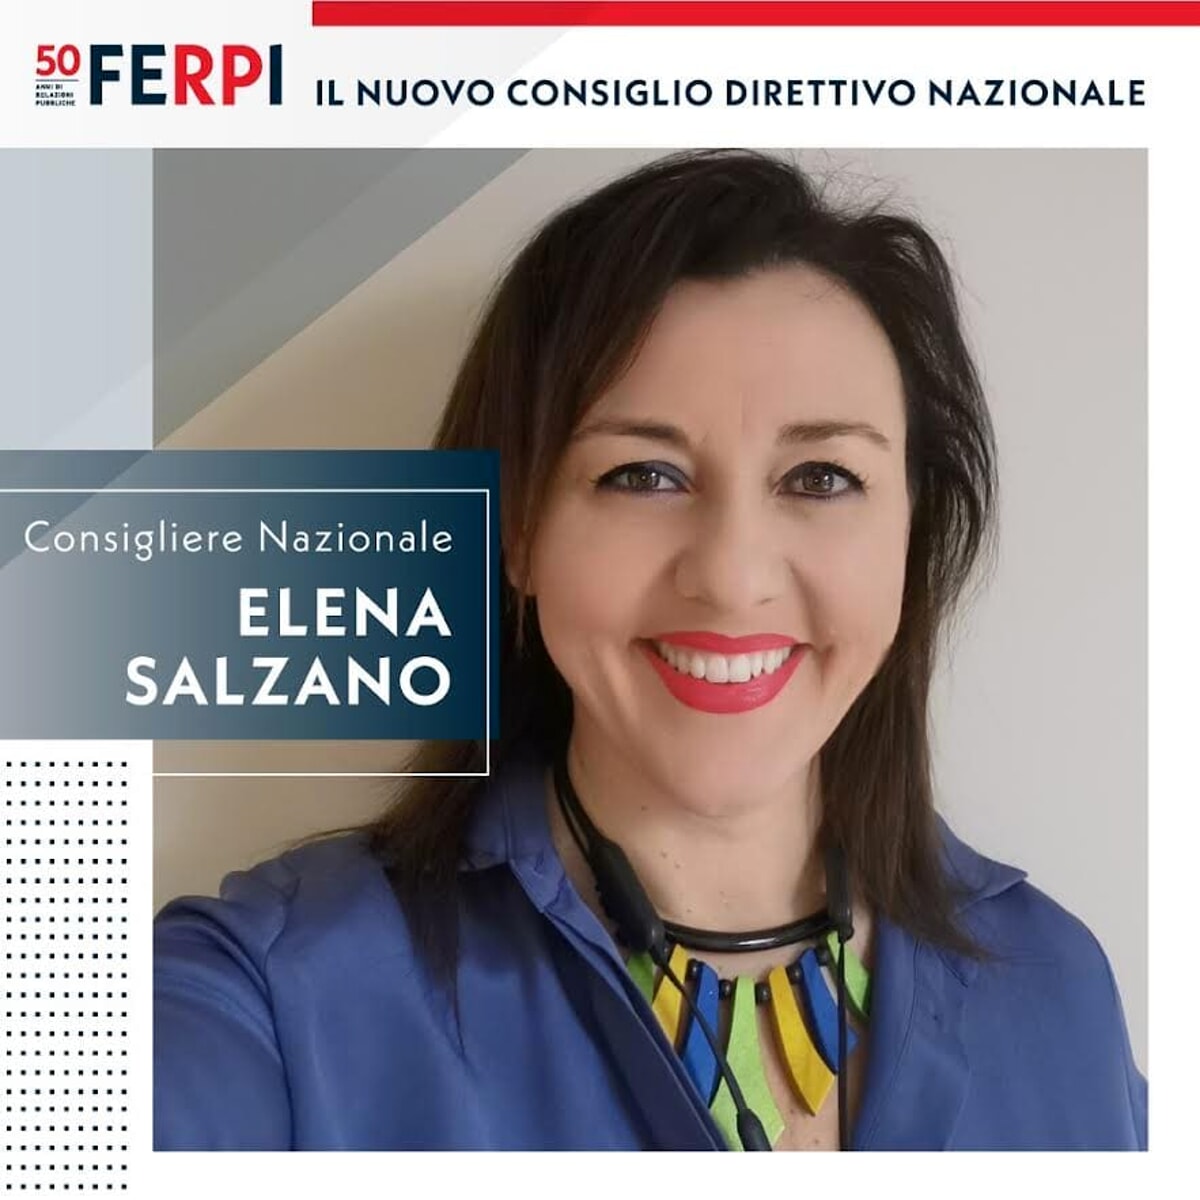 Elezioni nazionali Ferpi: nel consiglio direttivo anche la salernitana Elena Salzano